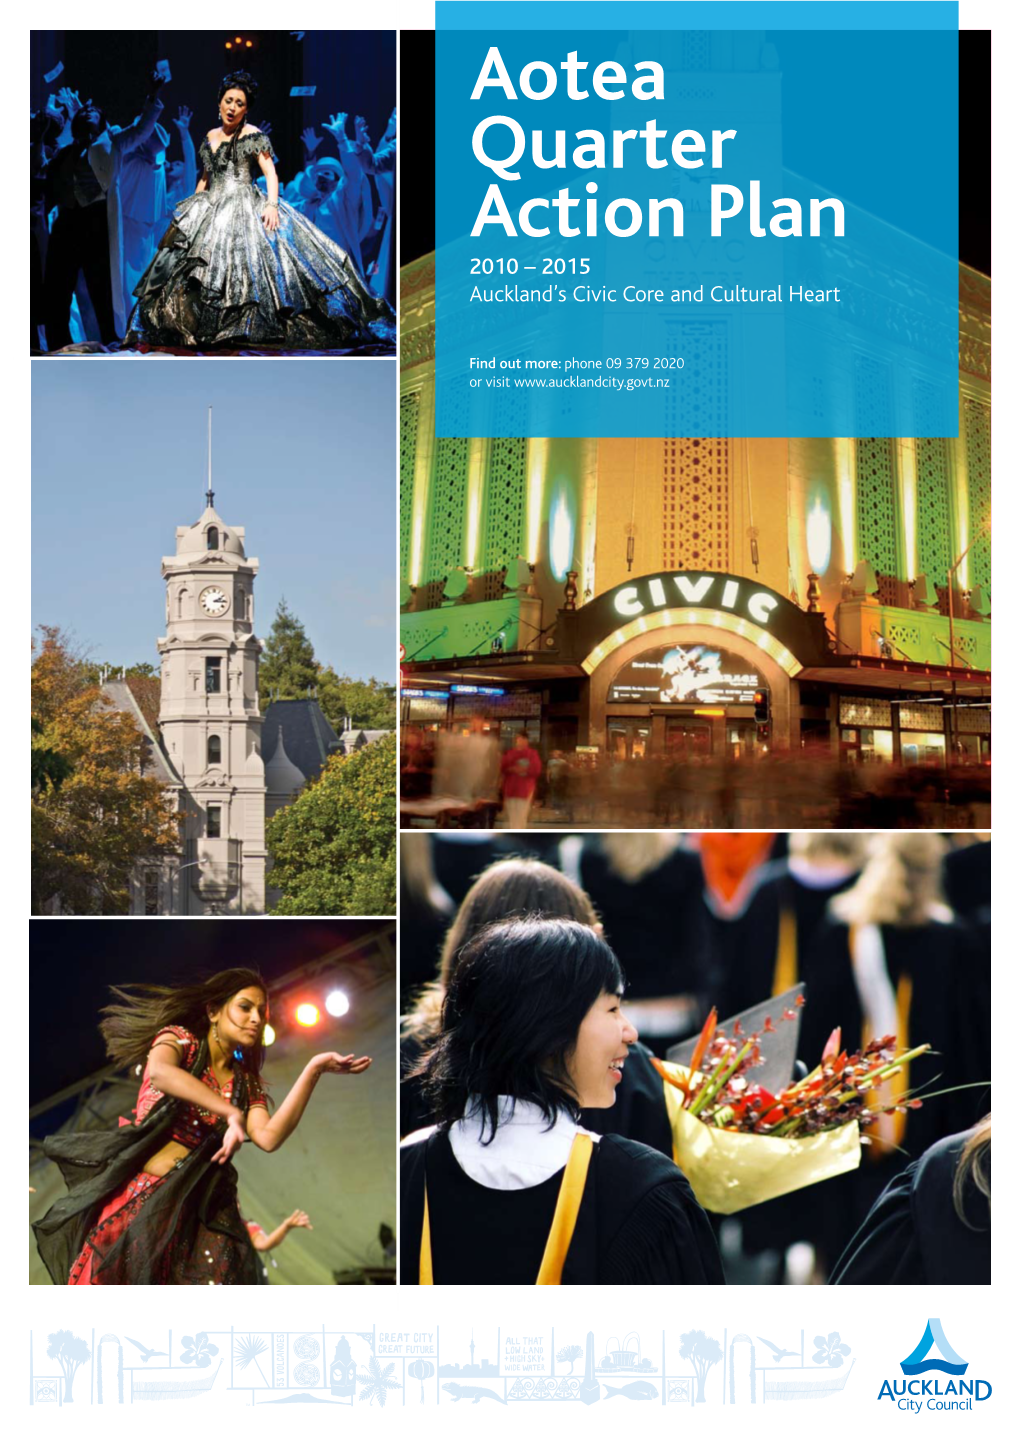 Aotea Quarter Action Plan, 2010